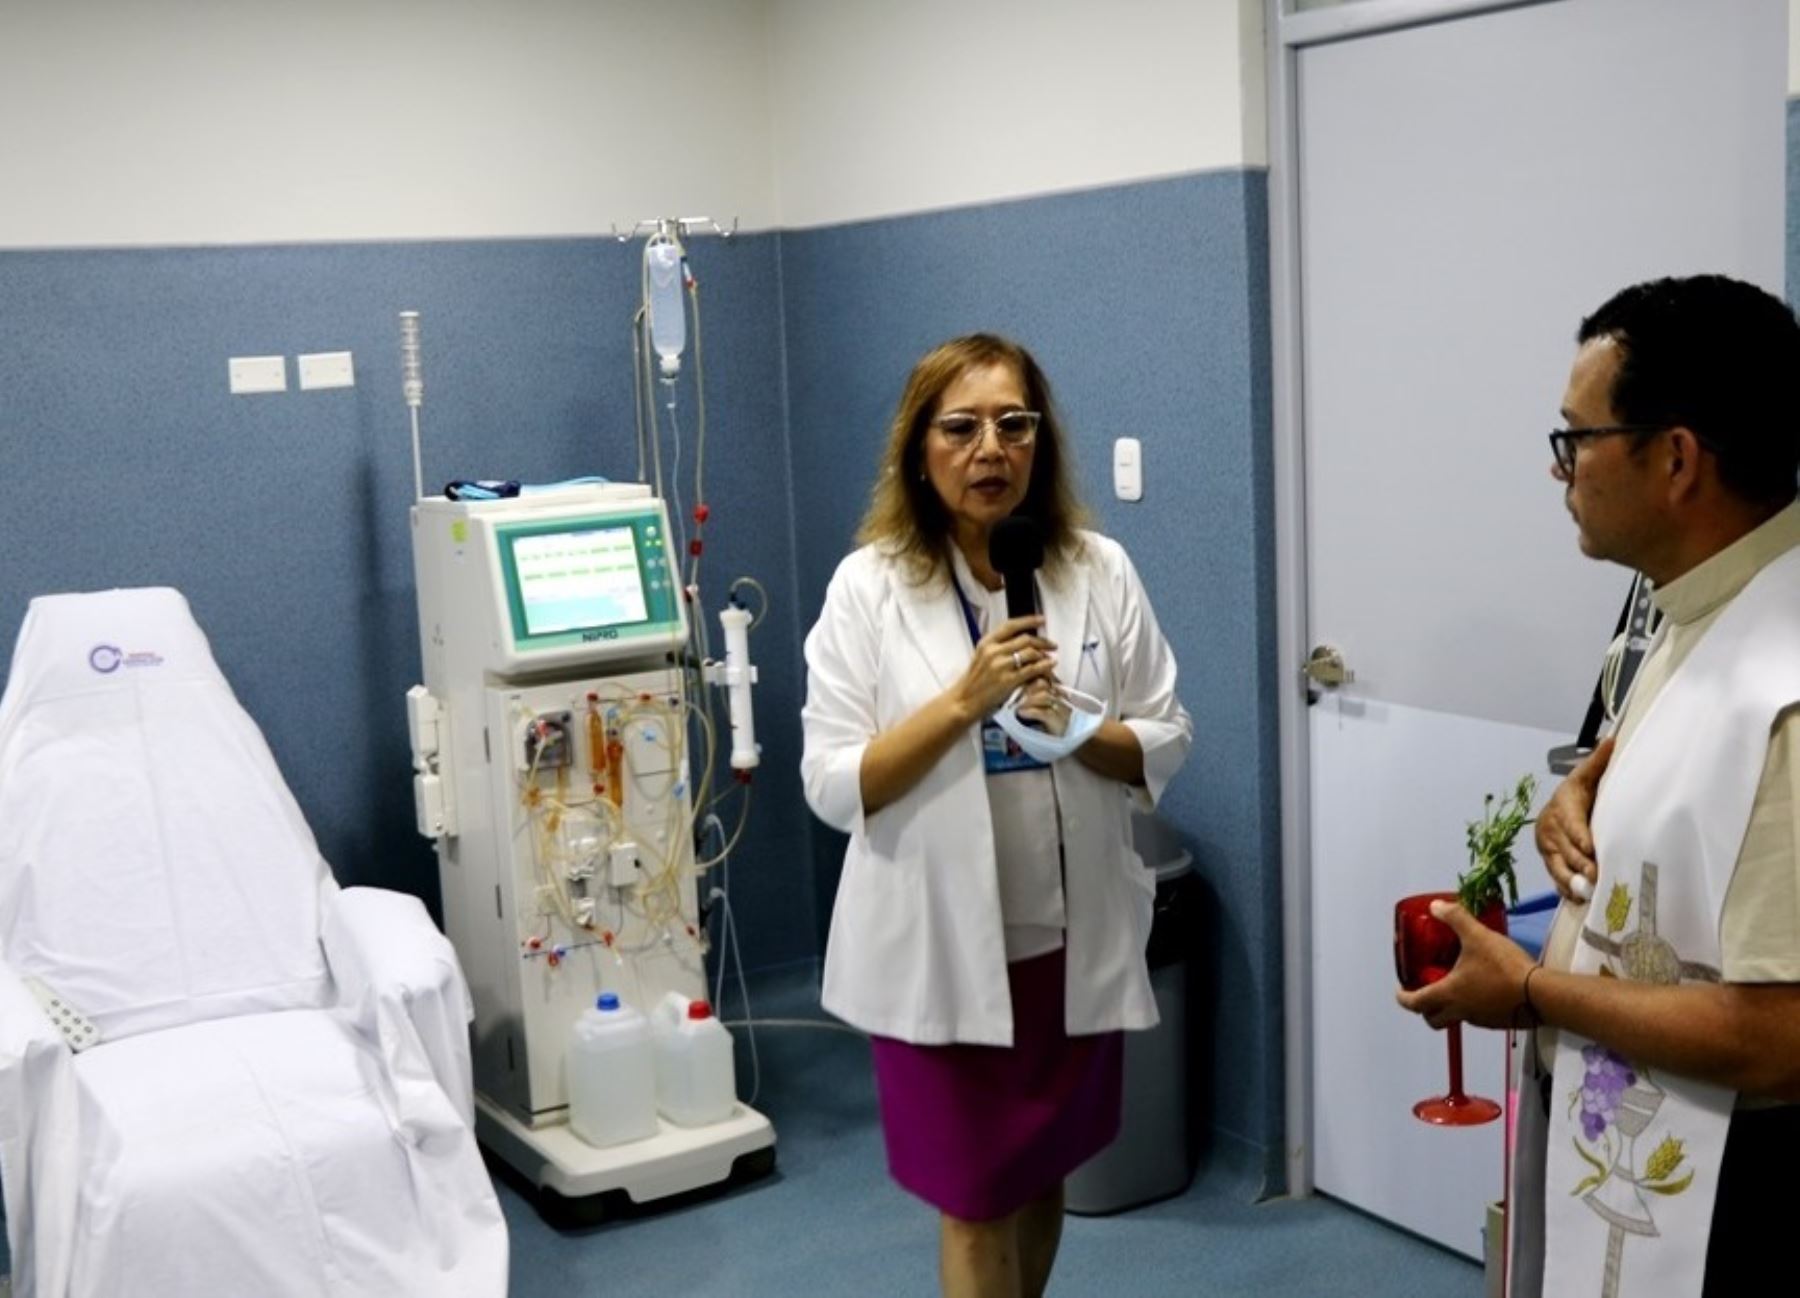 El Hospital General de Jaén habilita el servicio de hemodiálisis y diálisis peritoneal en beneficio de los pacientes que viven en dicha provincia ubicada en Cajamarca. Foto: Eduard Lozano.